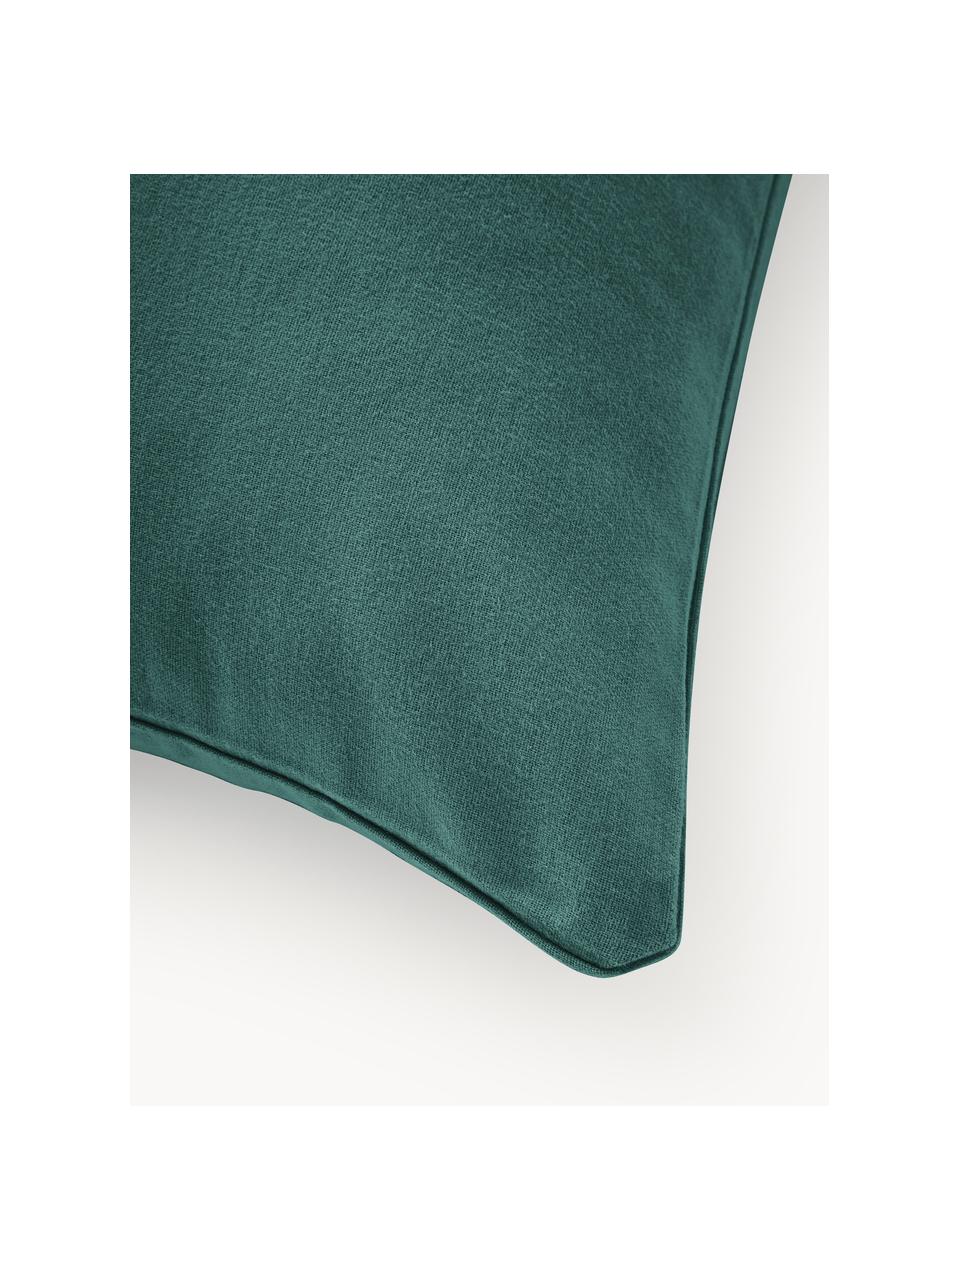 Funda de almohada de franela Biba, Verde oscuro, An 45 x L 110 cm